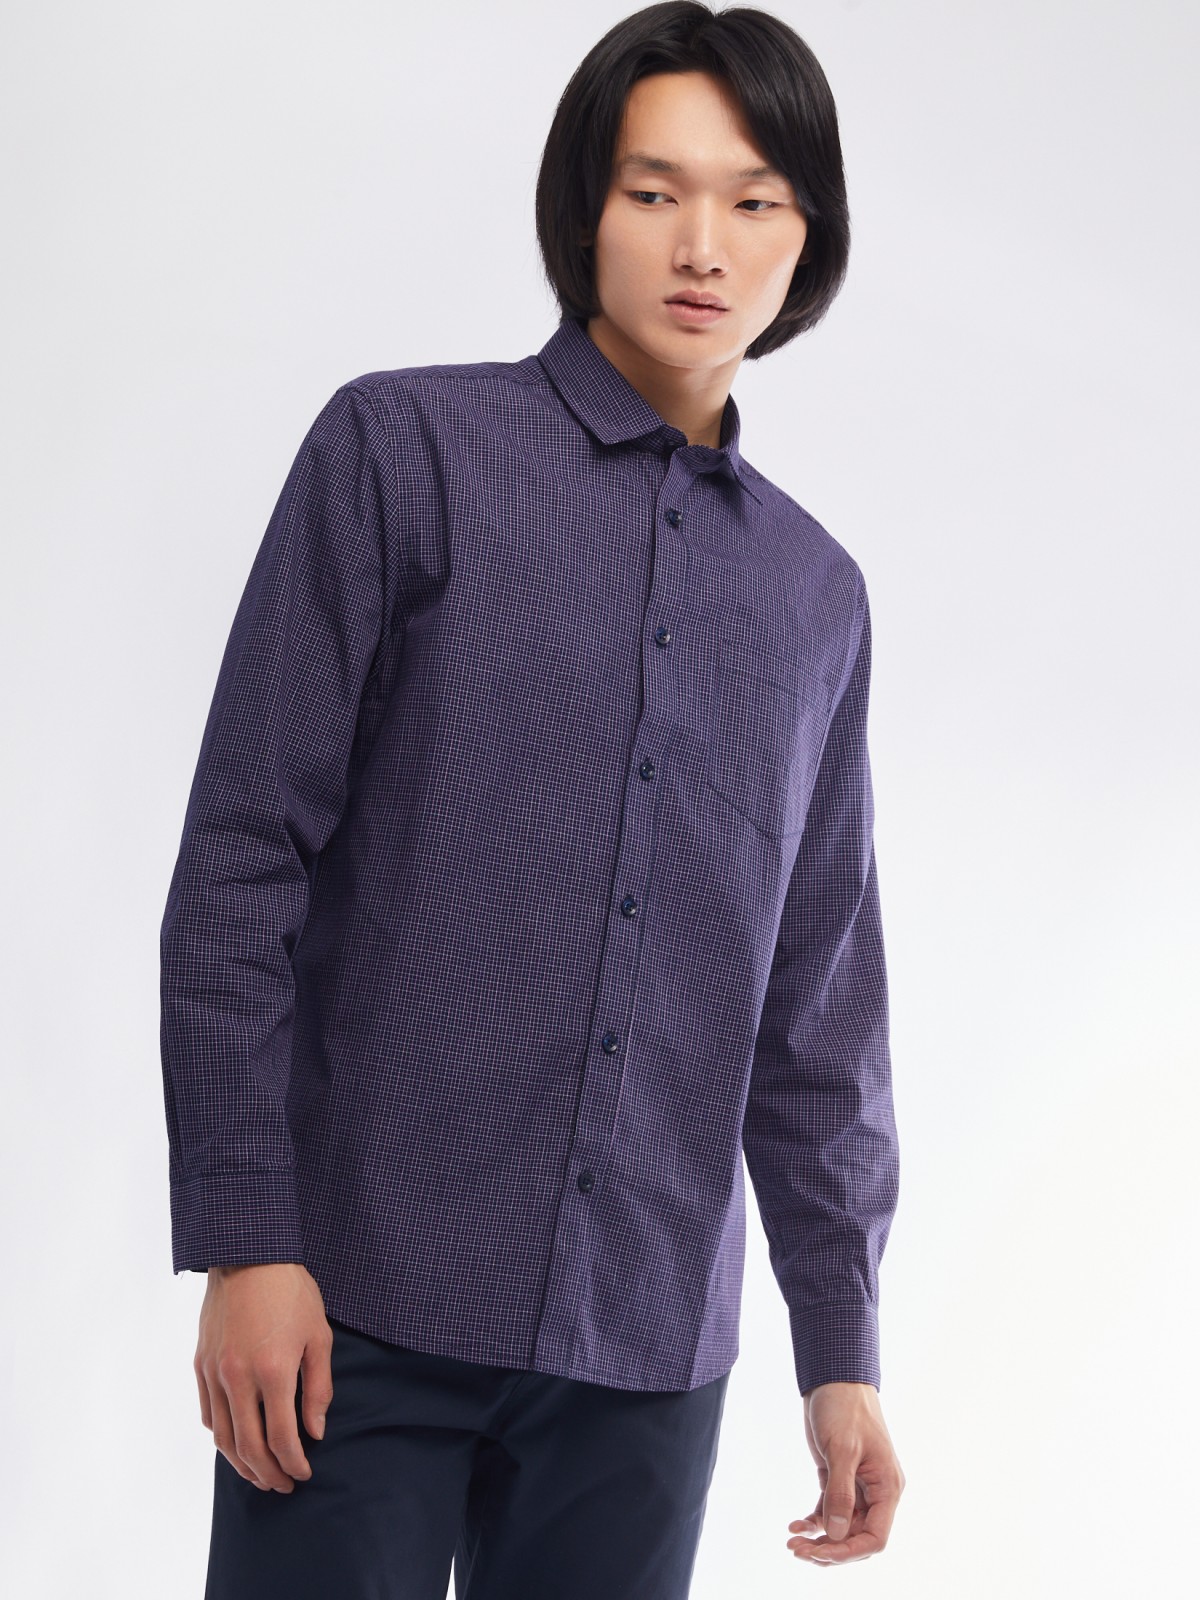 Офисная рубашка прямого силуэта с узором в клетку zolla 01411217Y022, цвет фиолетовый, размер M - фото 4